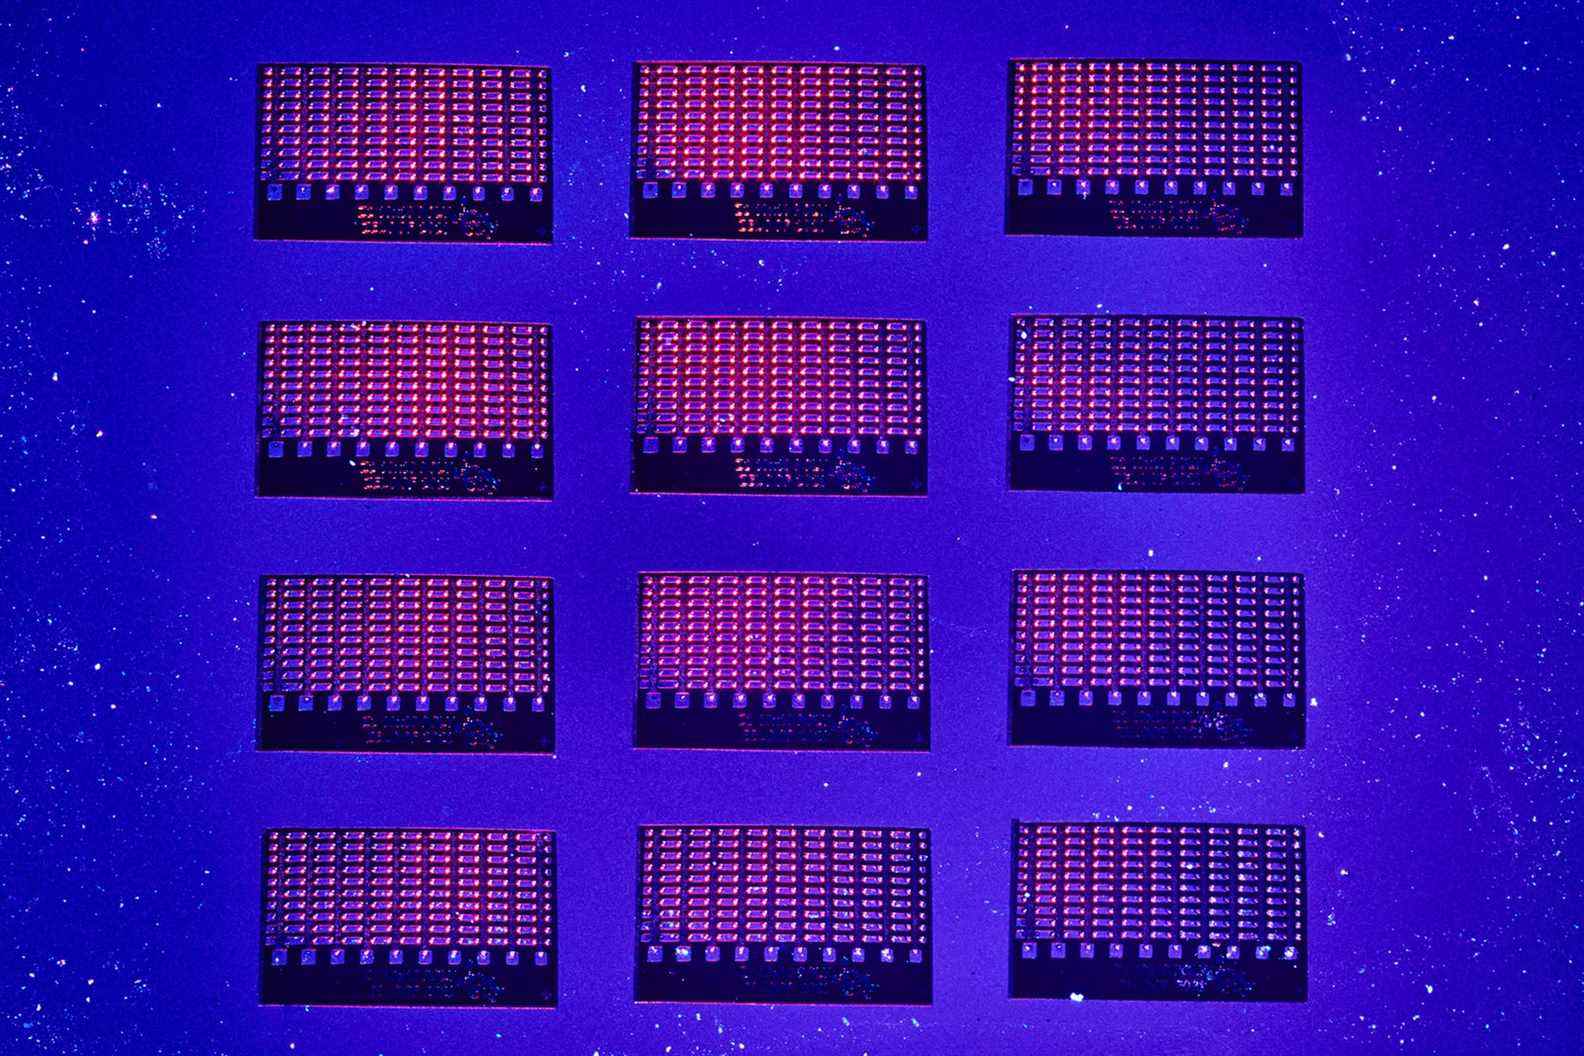 Gros plan des puces informatiques de deuxième génération de Zeloof sous une lumière bleue et rose